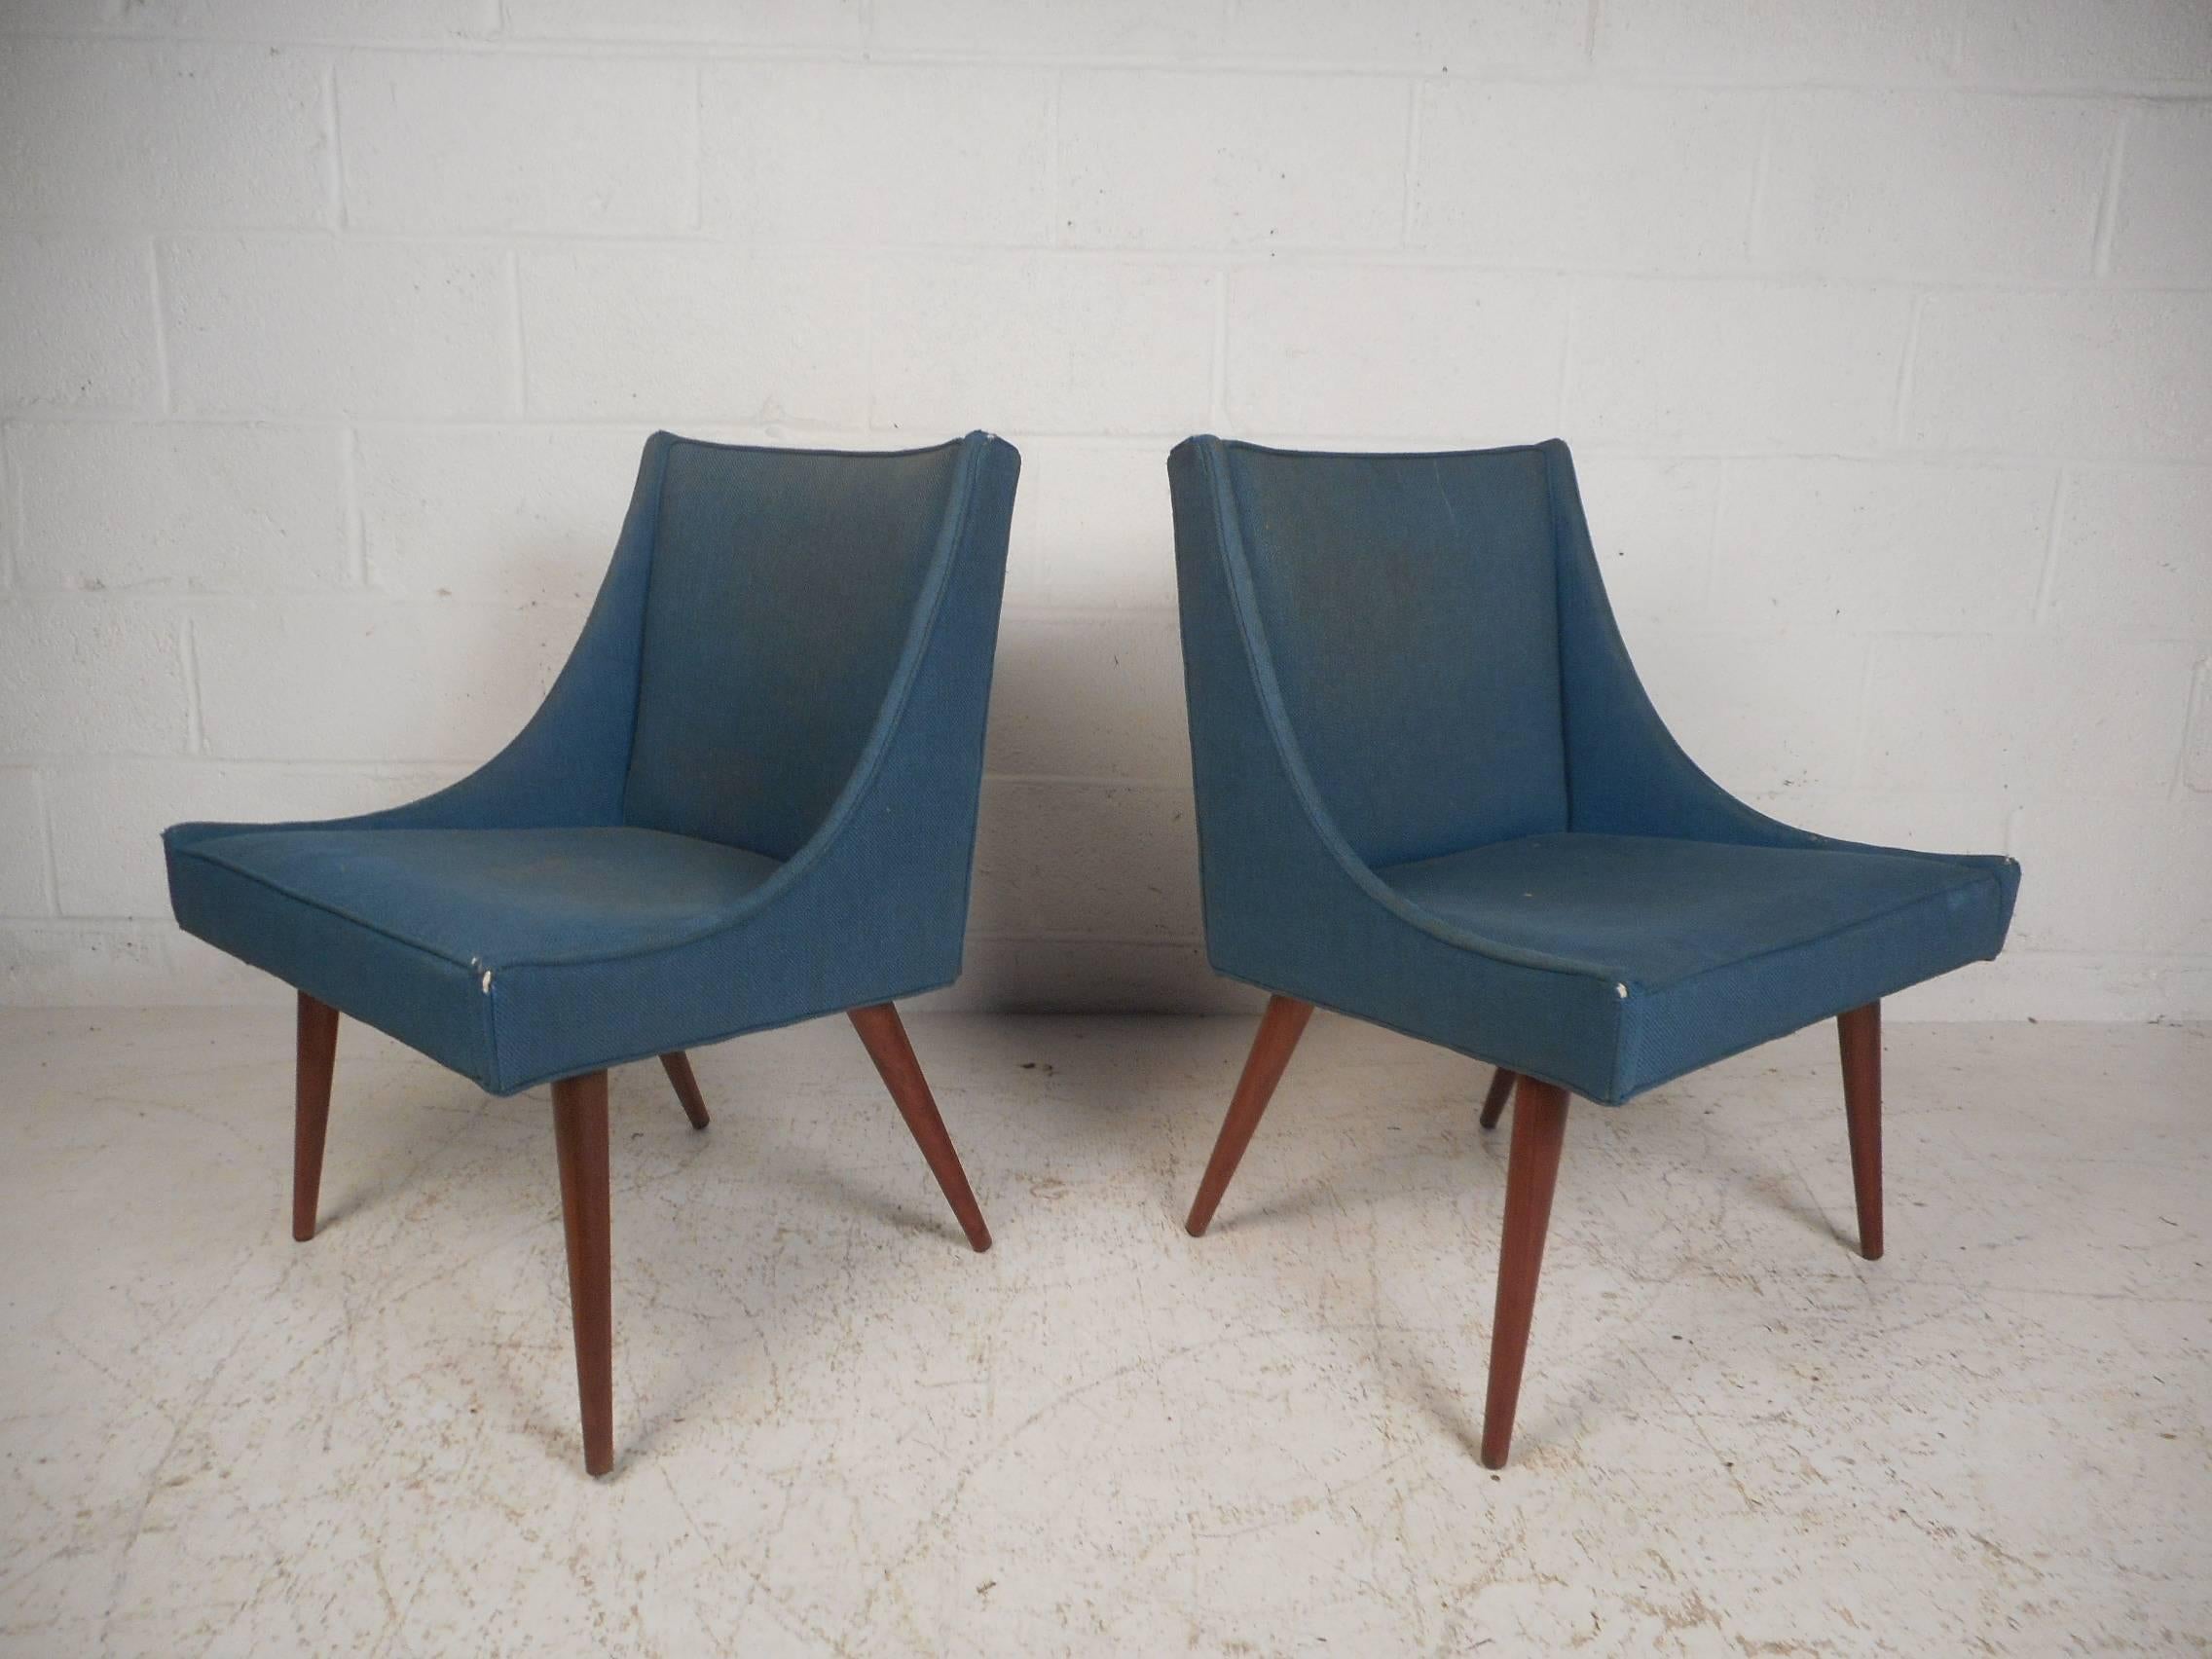 Dieses wunderschöne Paar moderner Loungesessel im Vintage-Stil verfügt über gespreizte Beine aus Walnussholz. Das Design im Slipper-Stil und der blaue Vintage-Stoff sorgen für viel Komfort, ohne auf Stil zu verzichten. Dieses einzigartige Stuhlpaar